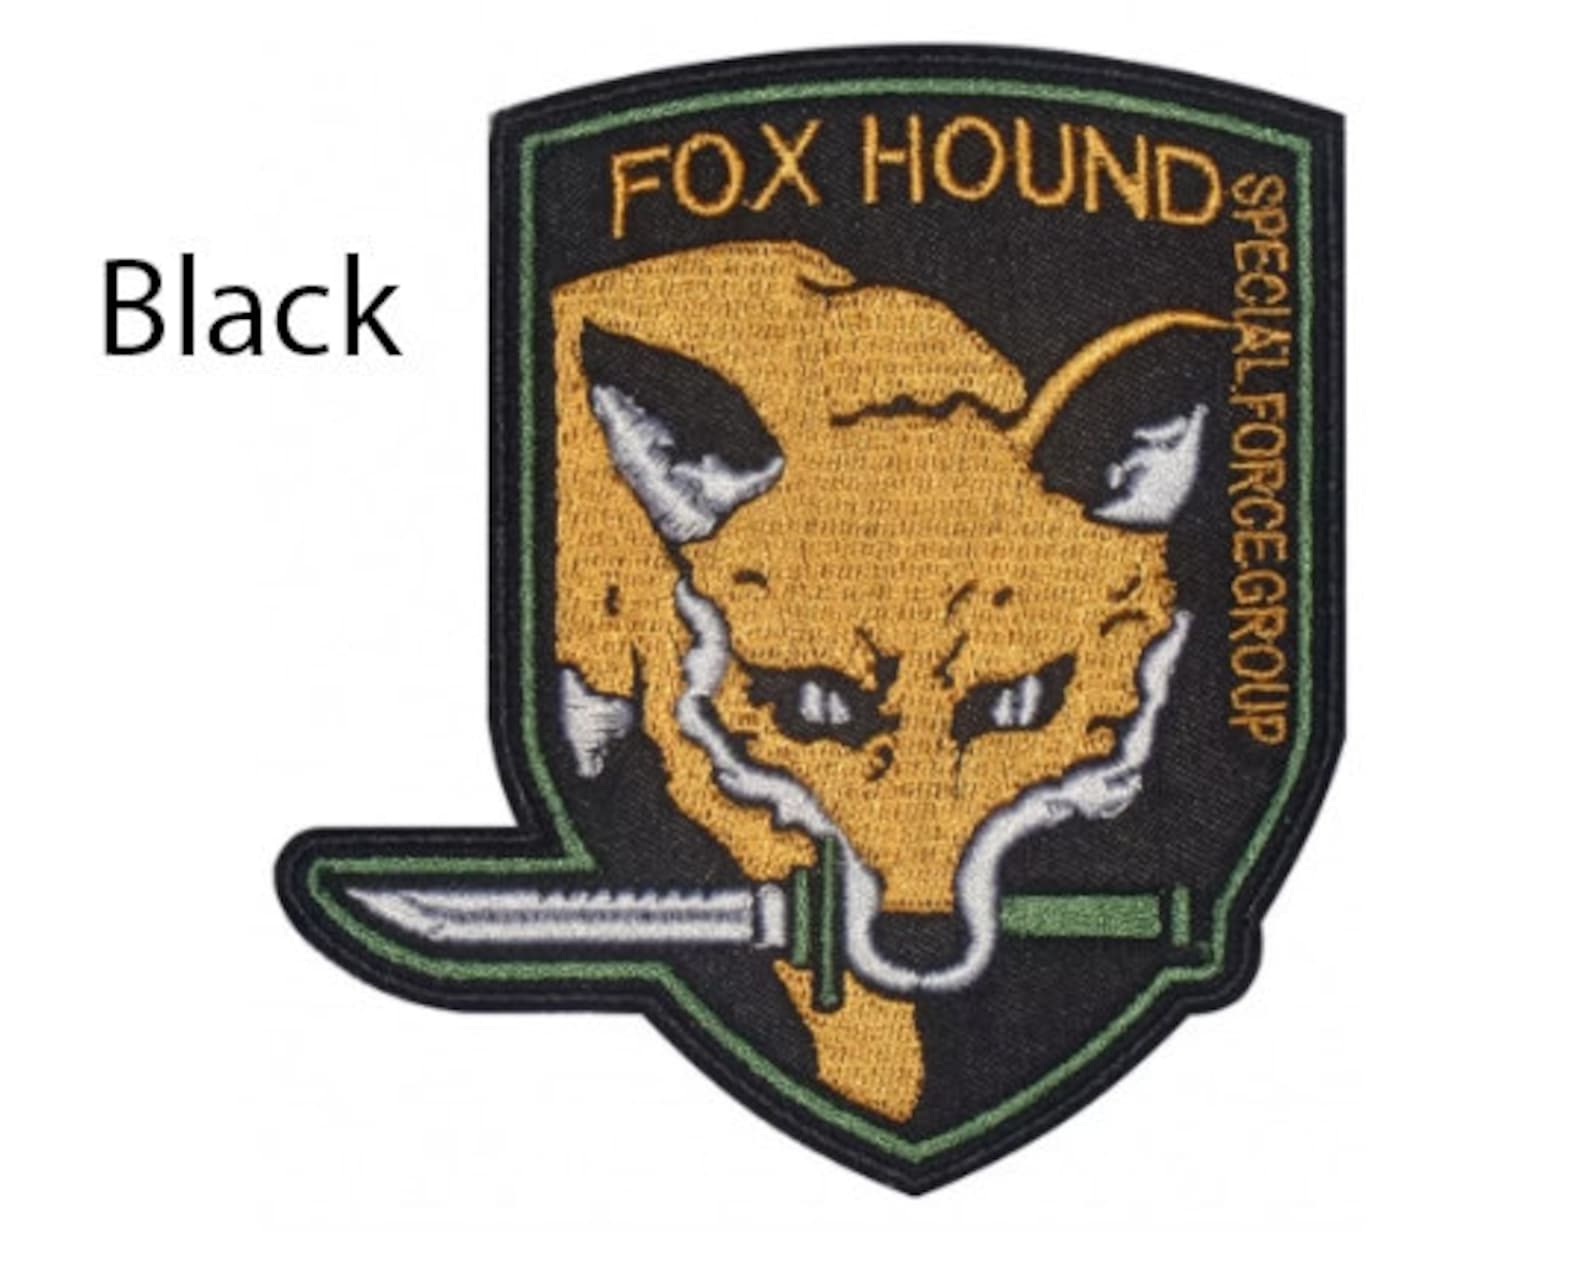 Fox hound. Foxhound MGS нашивка. Foxhound Metal Gear нашивка. Metal Gear Solid Foxhound. Foxhound Шеврон.